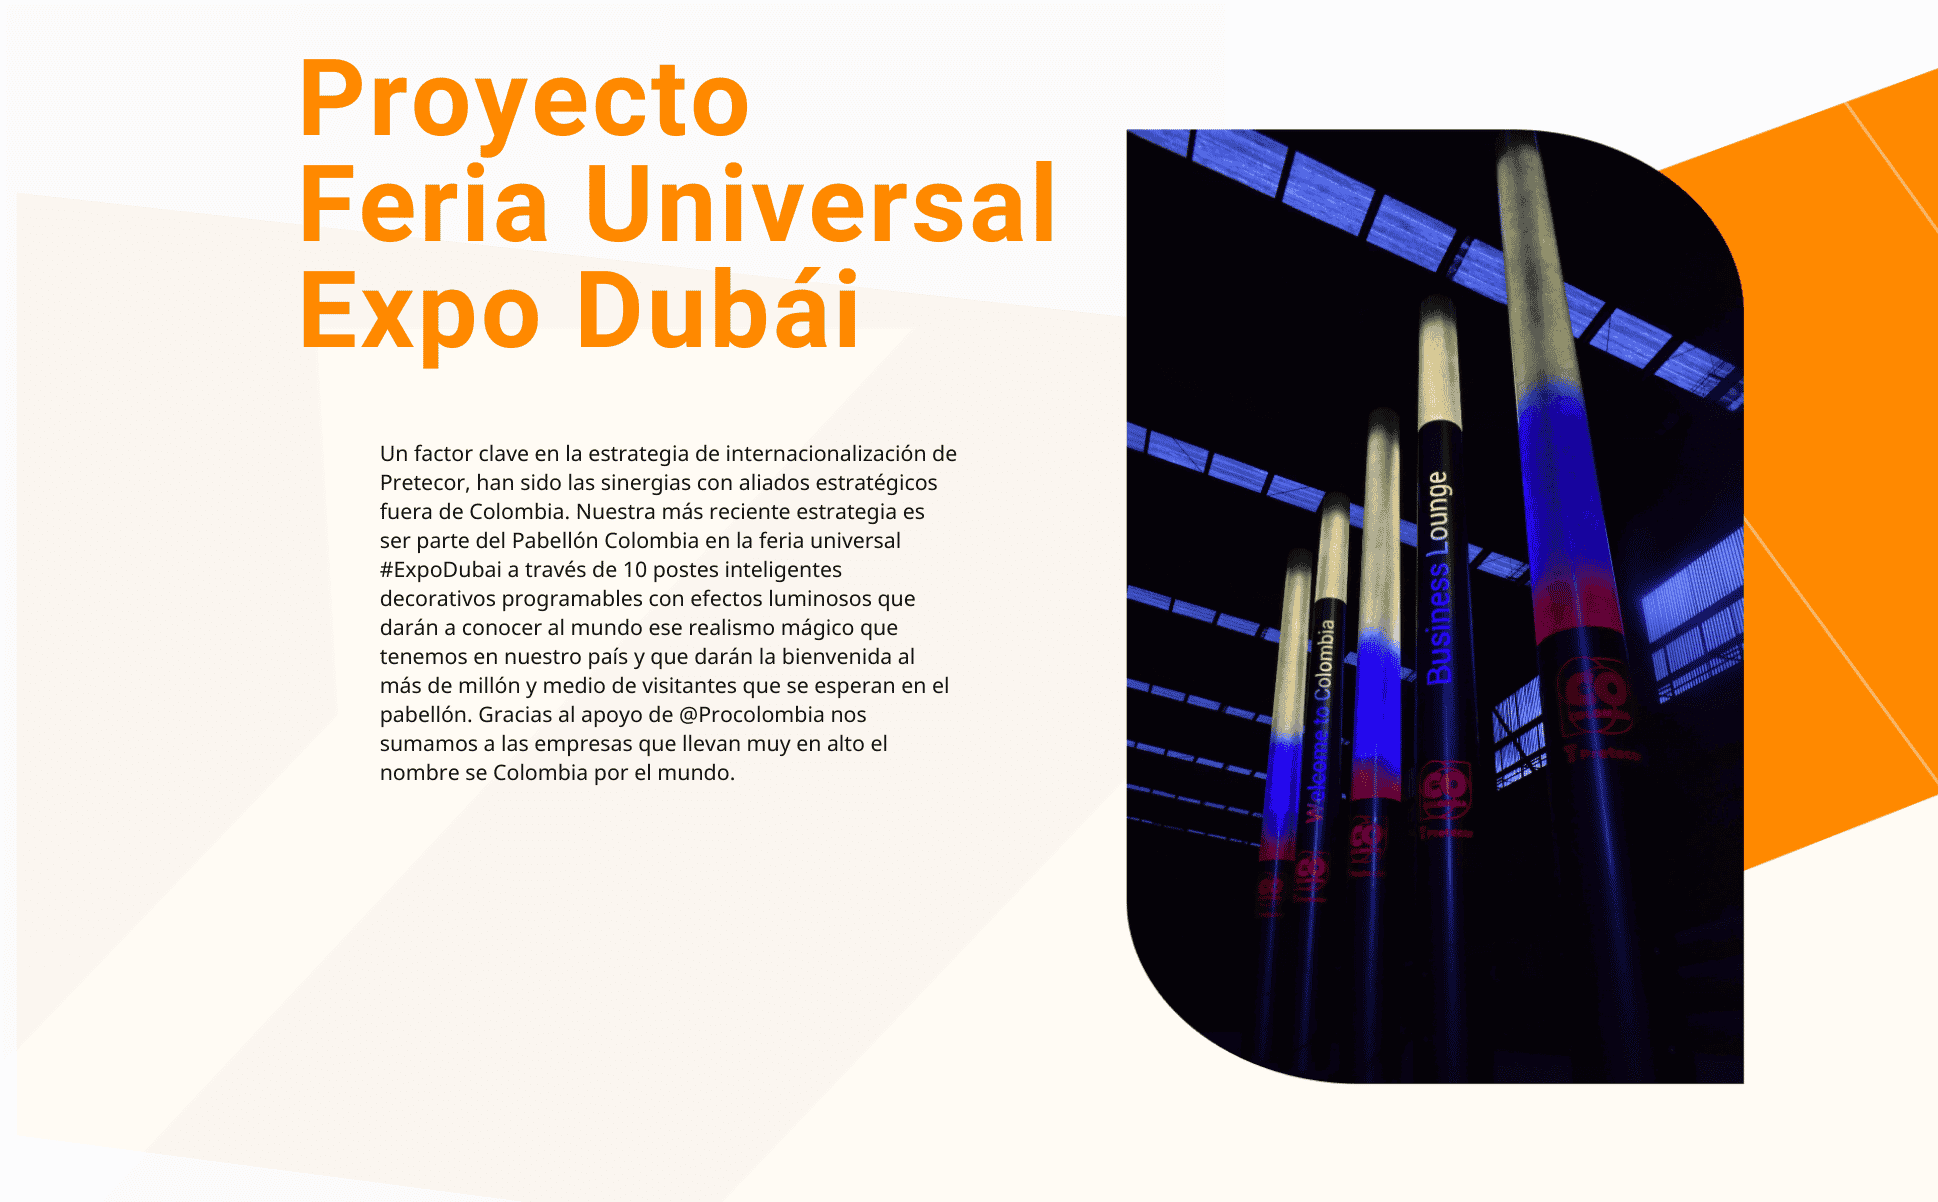 Proyecto Expo dubai